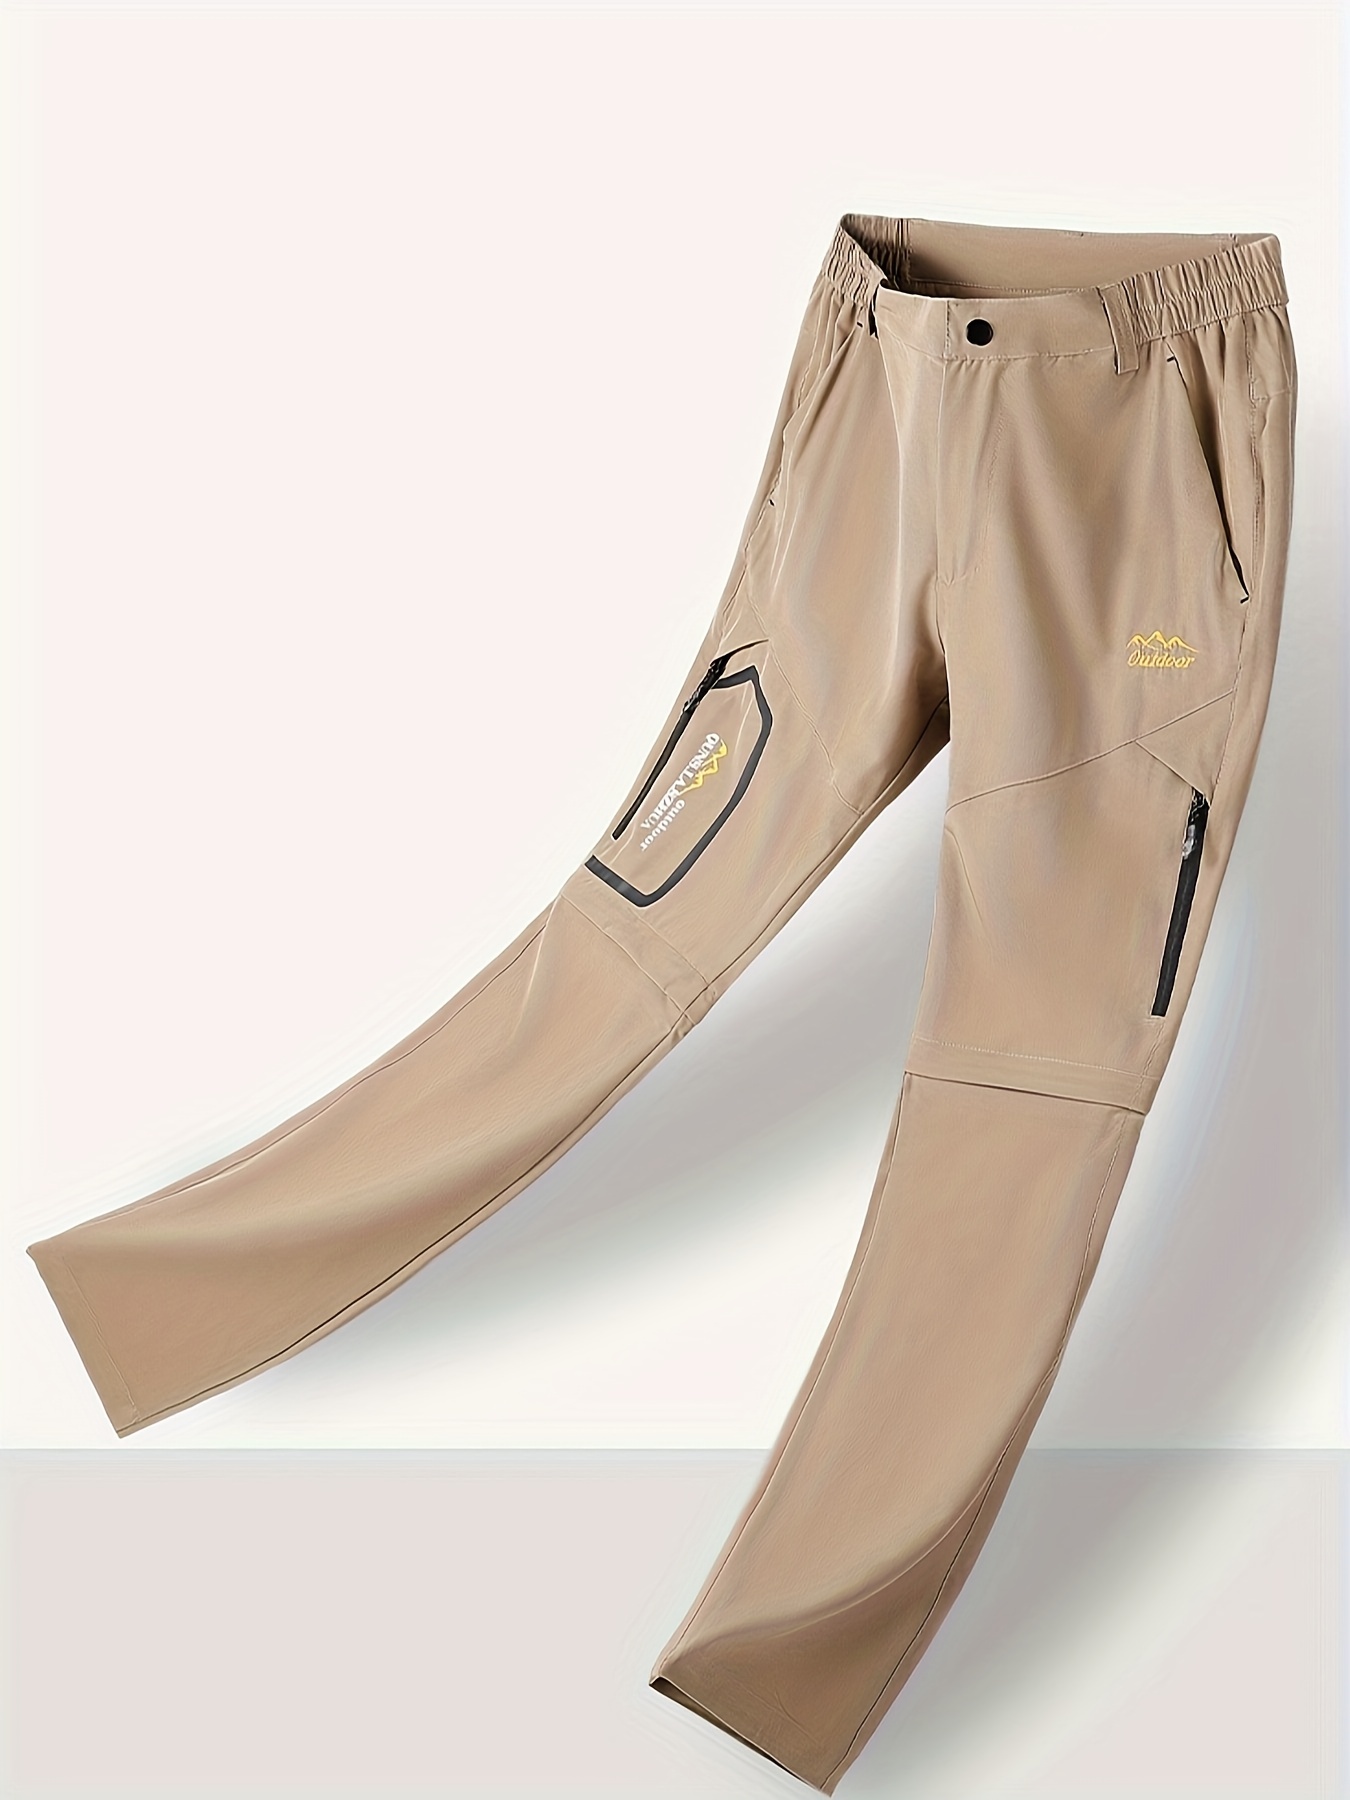 JNGSA Men's Hiking Pants Convertible Quick Dry Lightweight Zip-Off